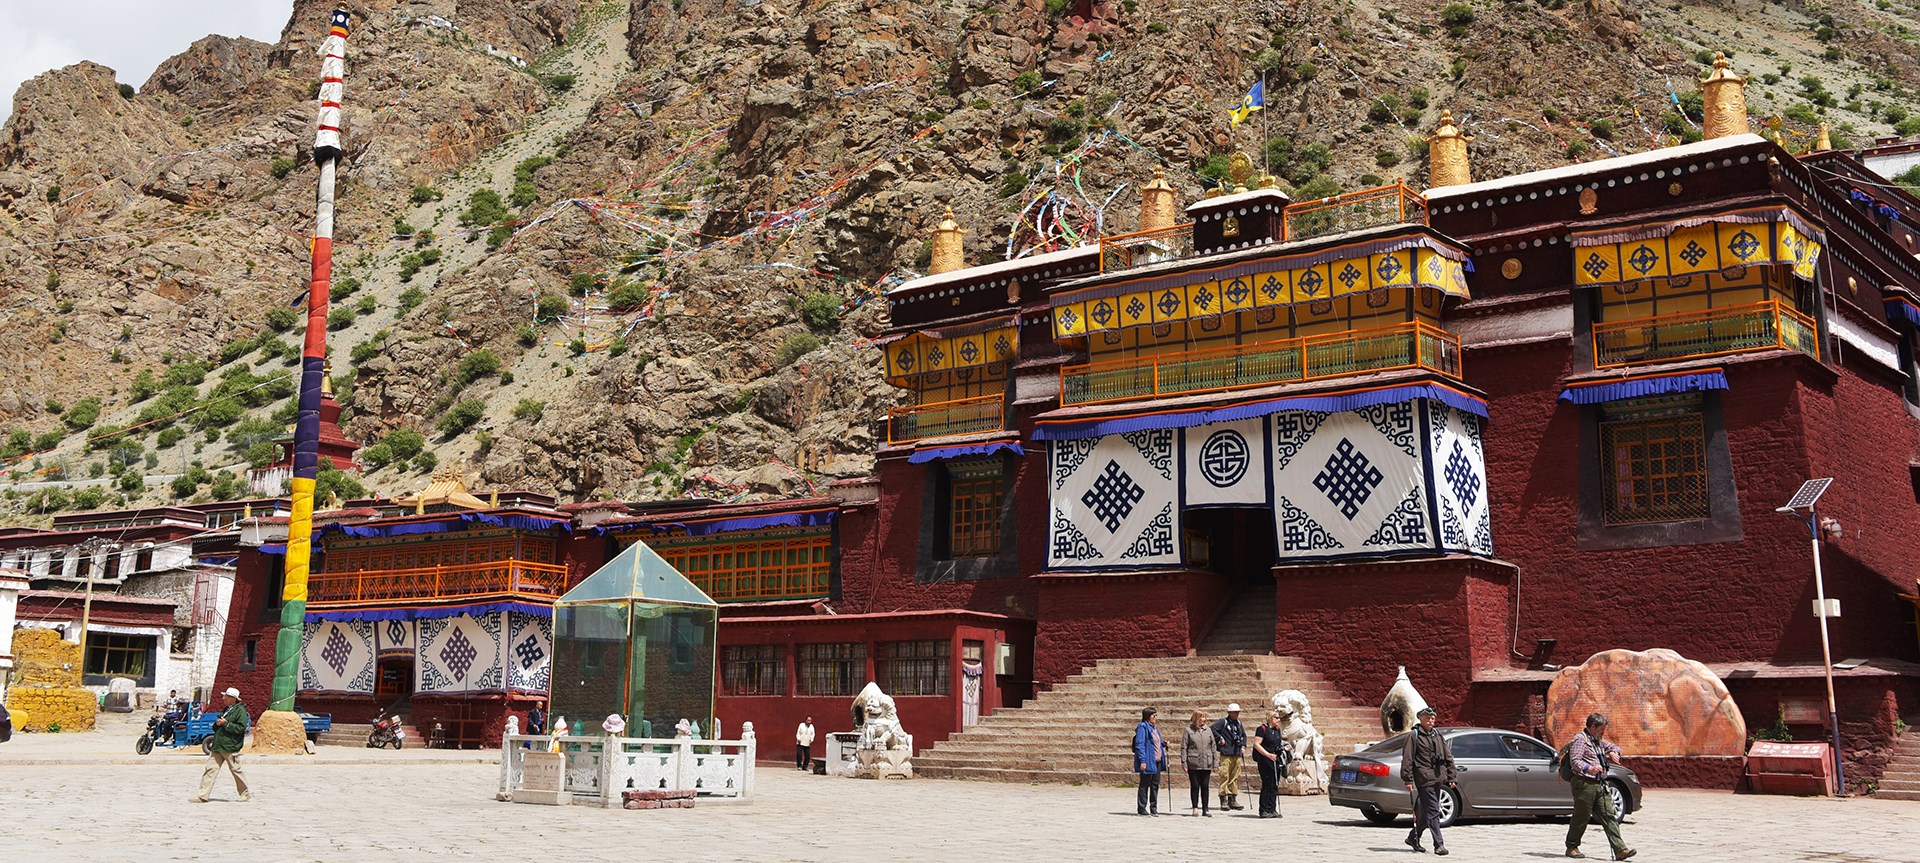 Tibet Trekking from Tsurpu to Yangbajing